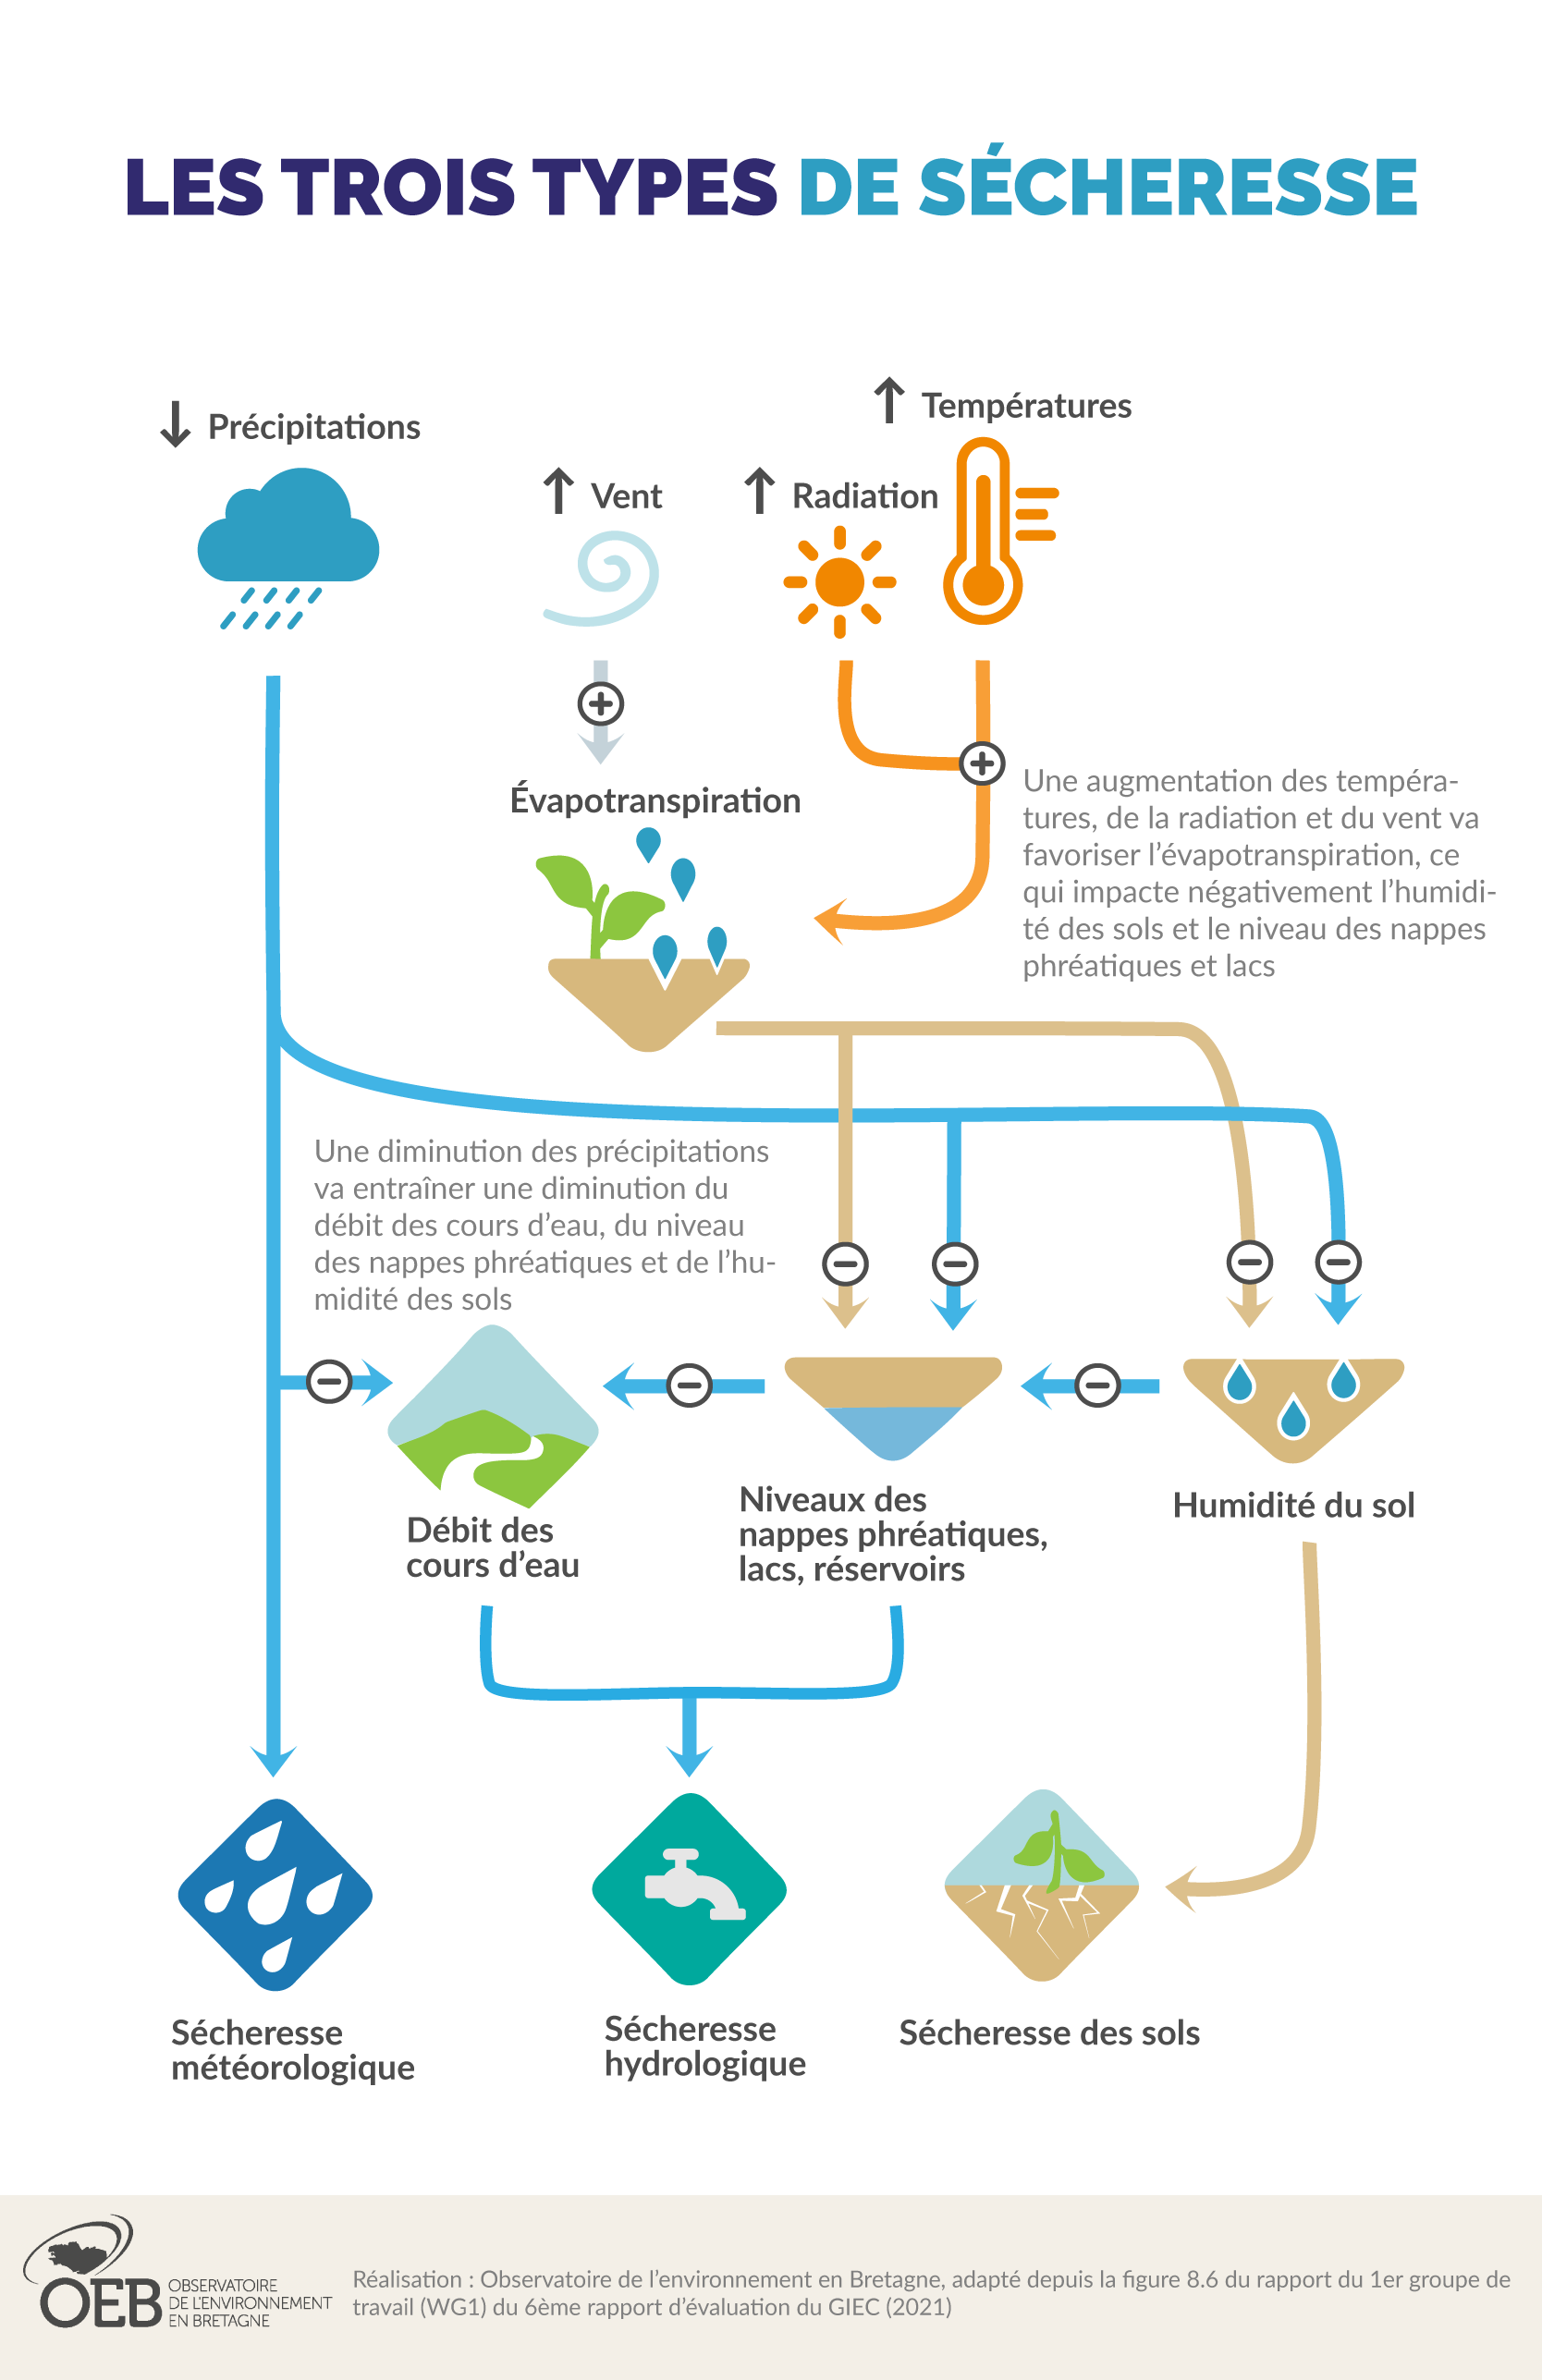 Les trois types de sécheresse et leurs facteurs climatiques liés